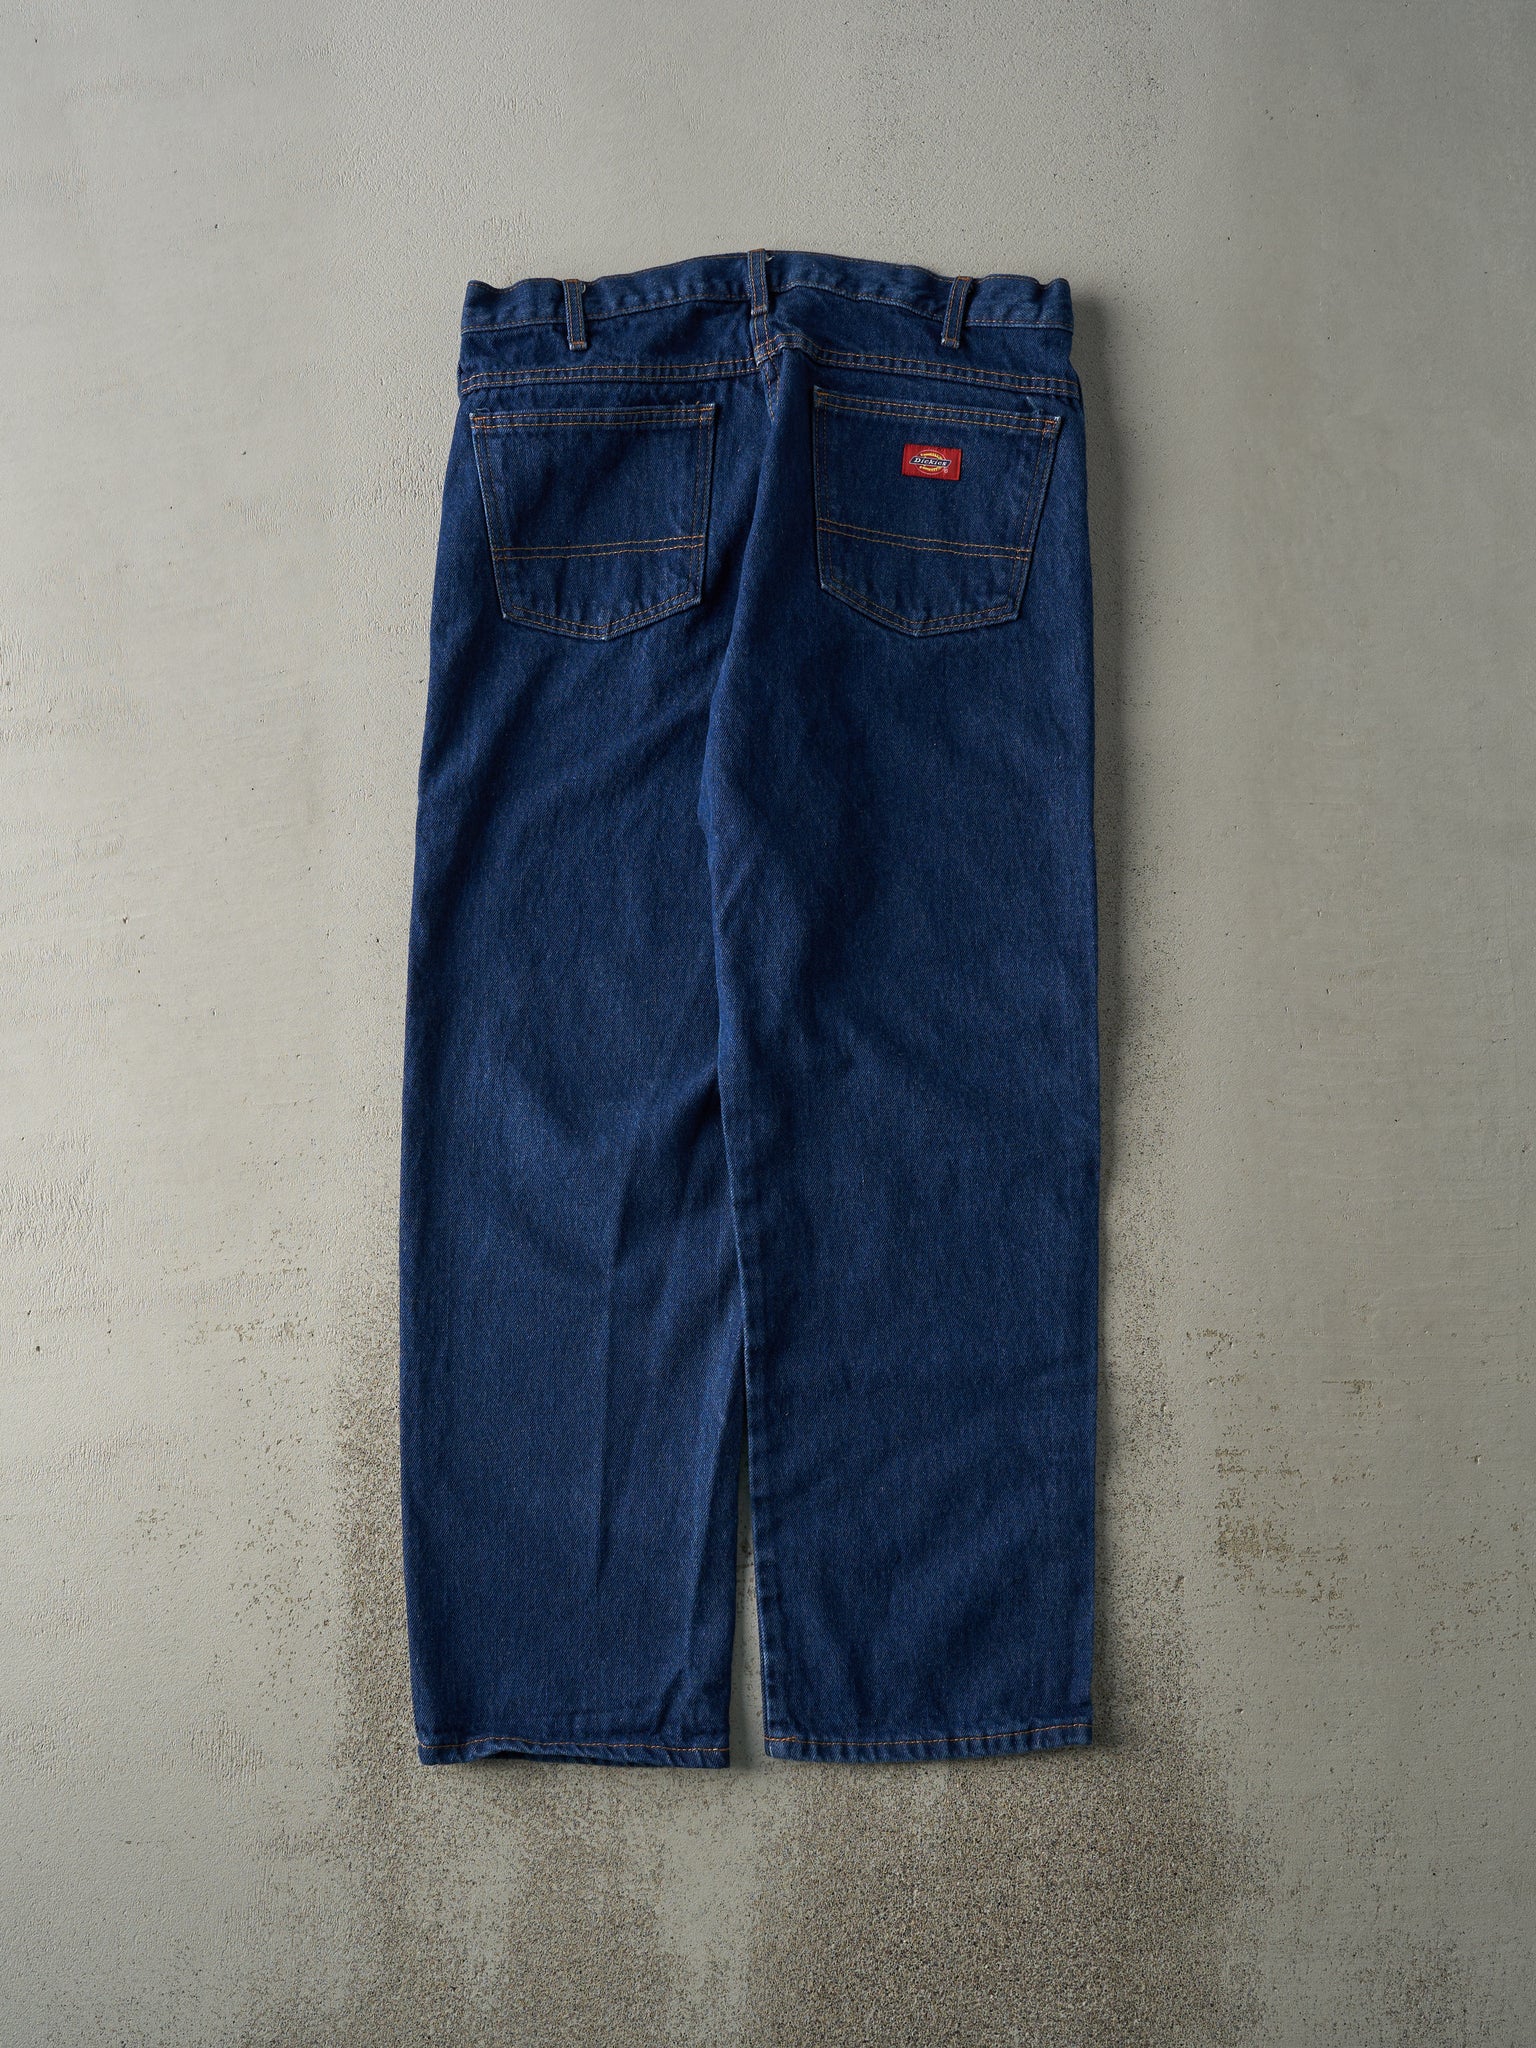 Vintage 90s Dark Wash Dickies Jeans (34x30)